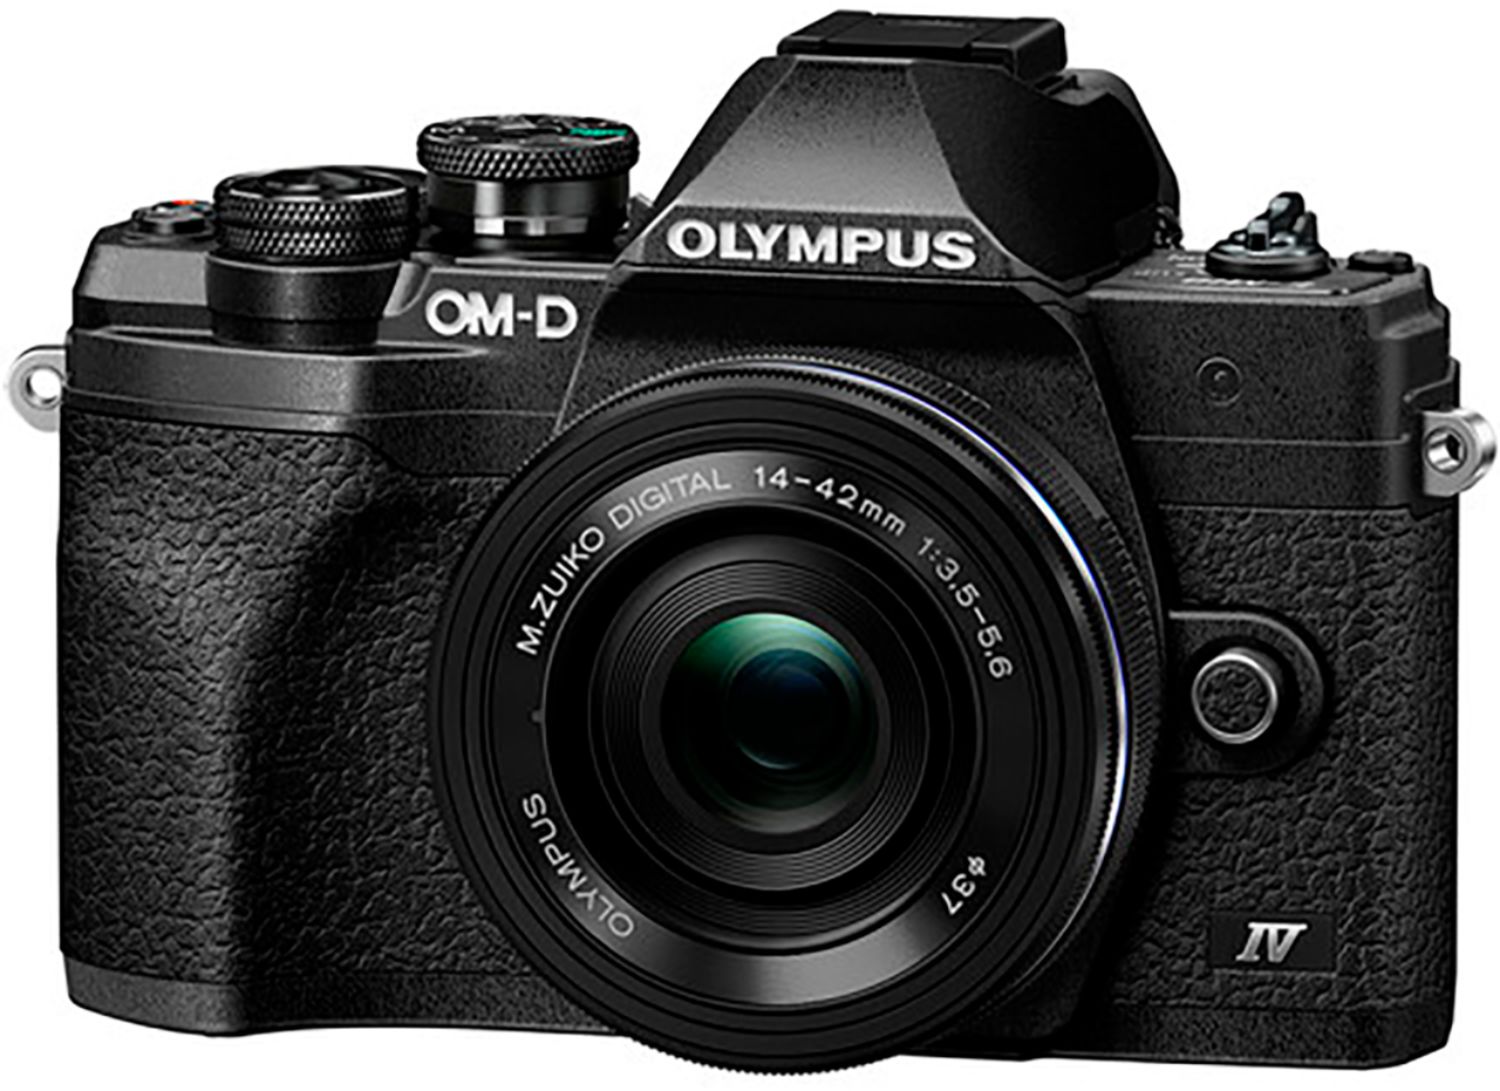 Olympus V207132SU000 OM-D E-M10 Mark IV Mirrorless Digital